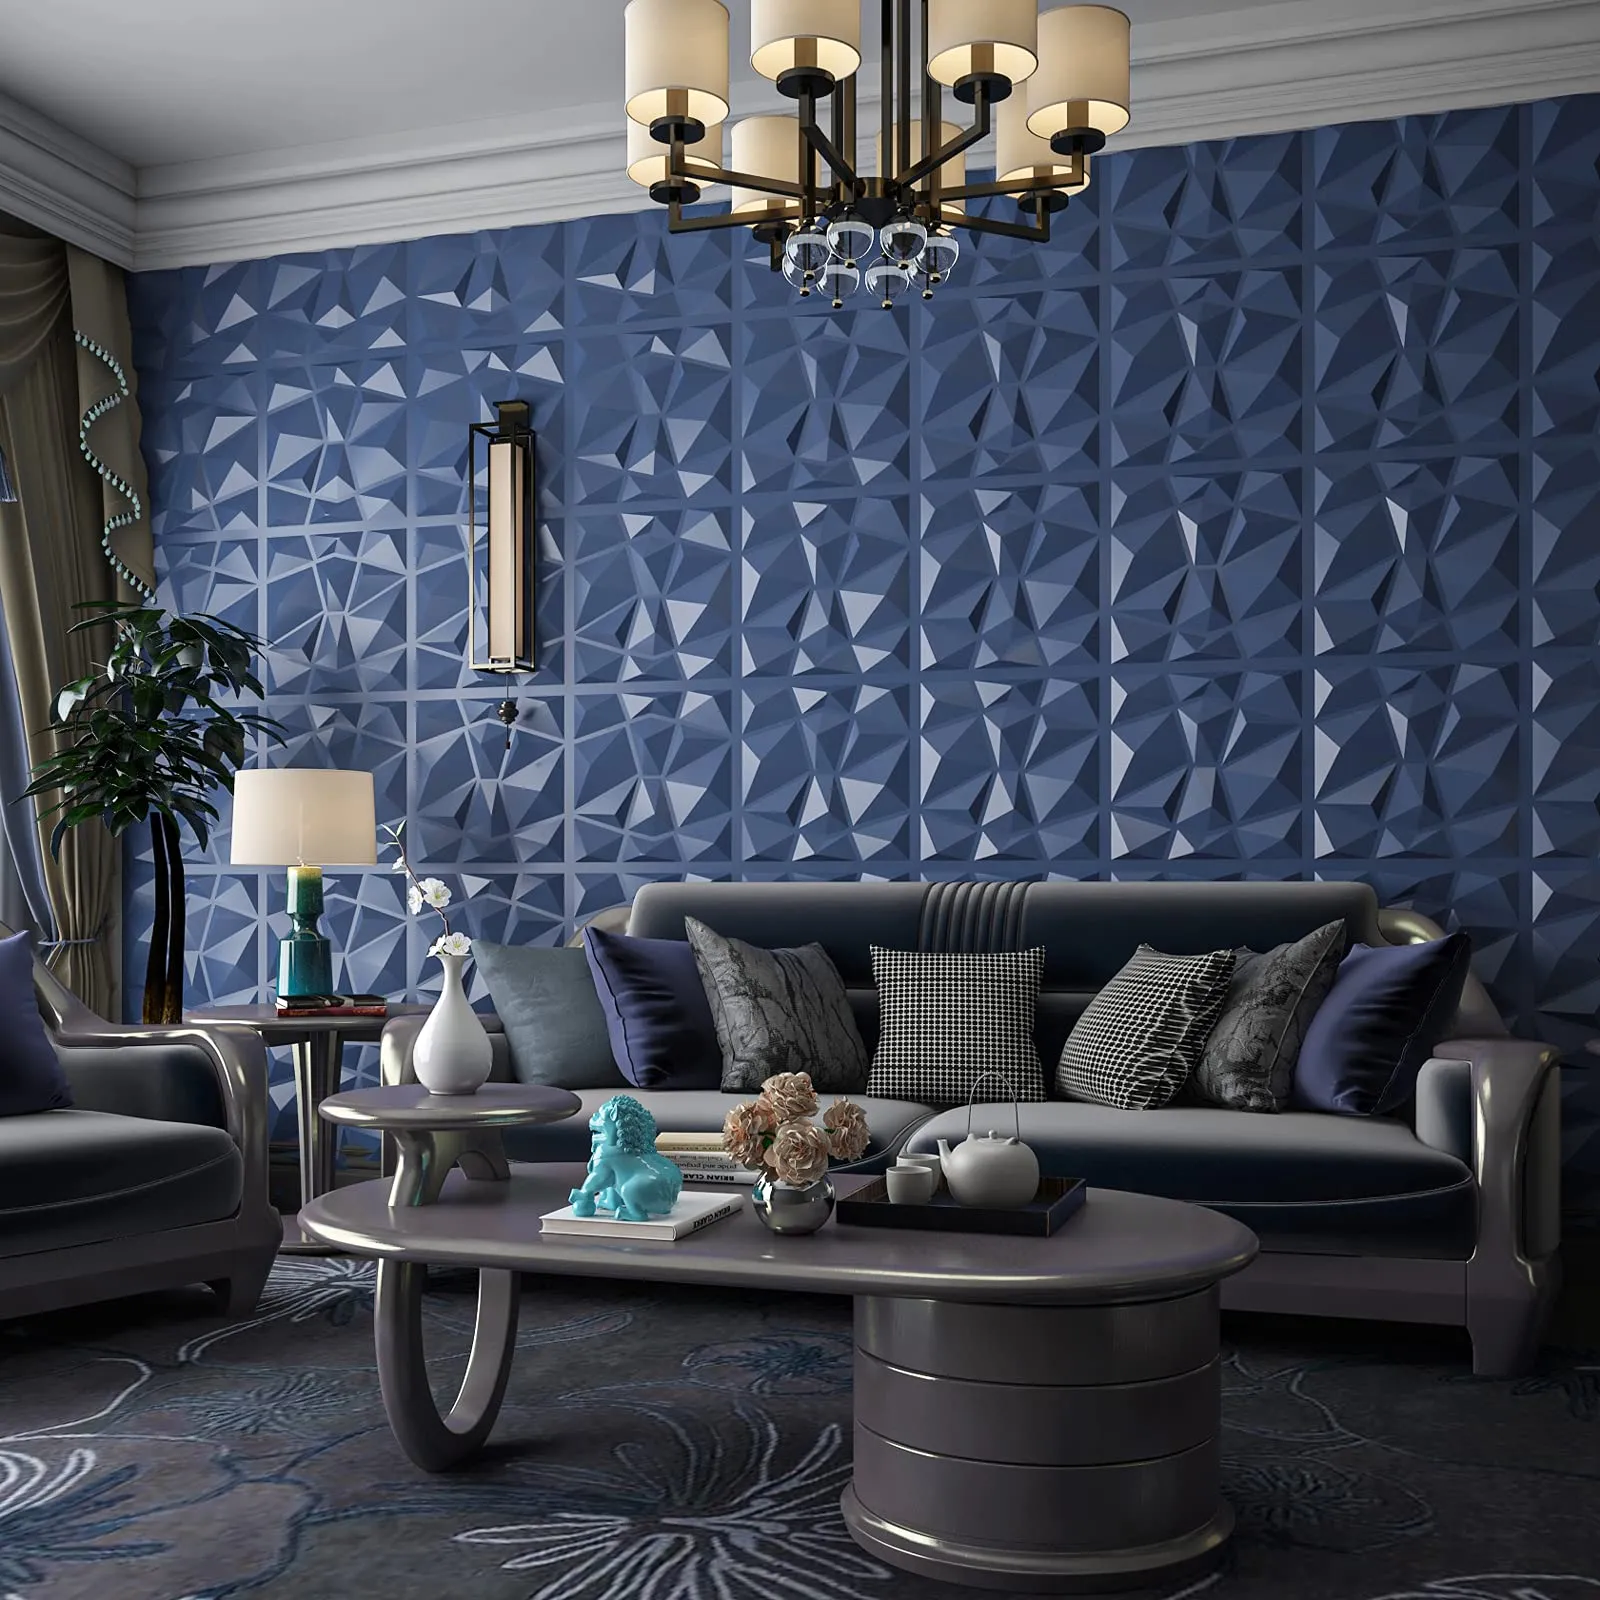 Art3d 50x50 cm 3D Plastik Duvar Panelleri Ses Geçirmez Donanma Mavi Elmas Tasarım Oturma Odası Yatak Odası TV Arkaplan (12 Fayans 32 SQ FT)